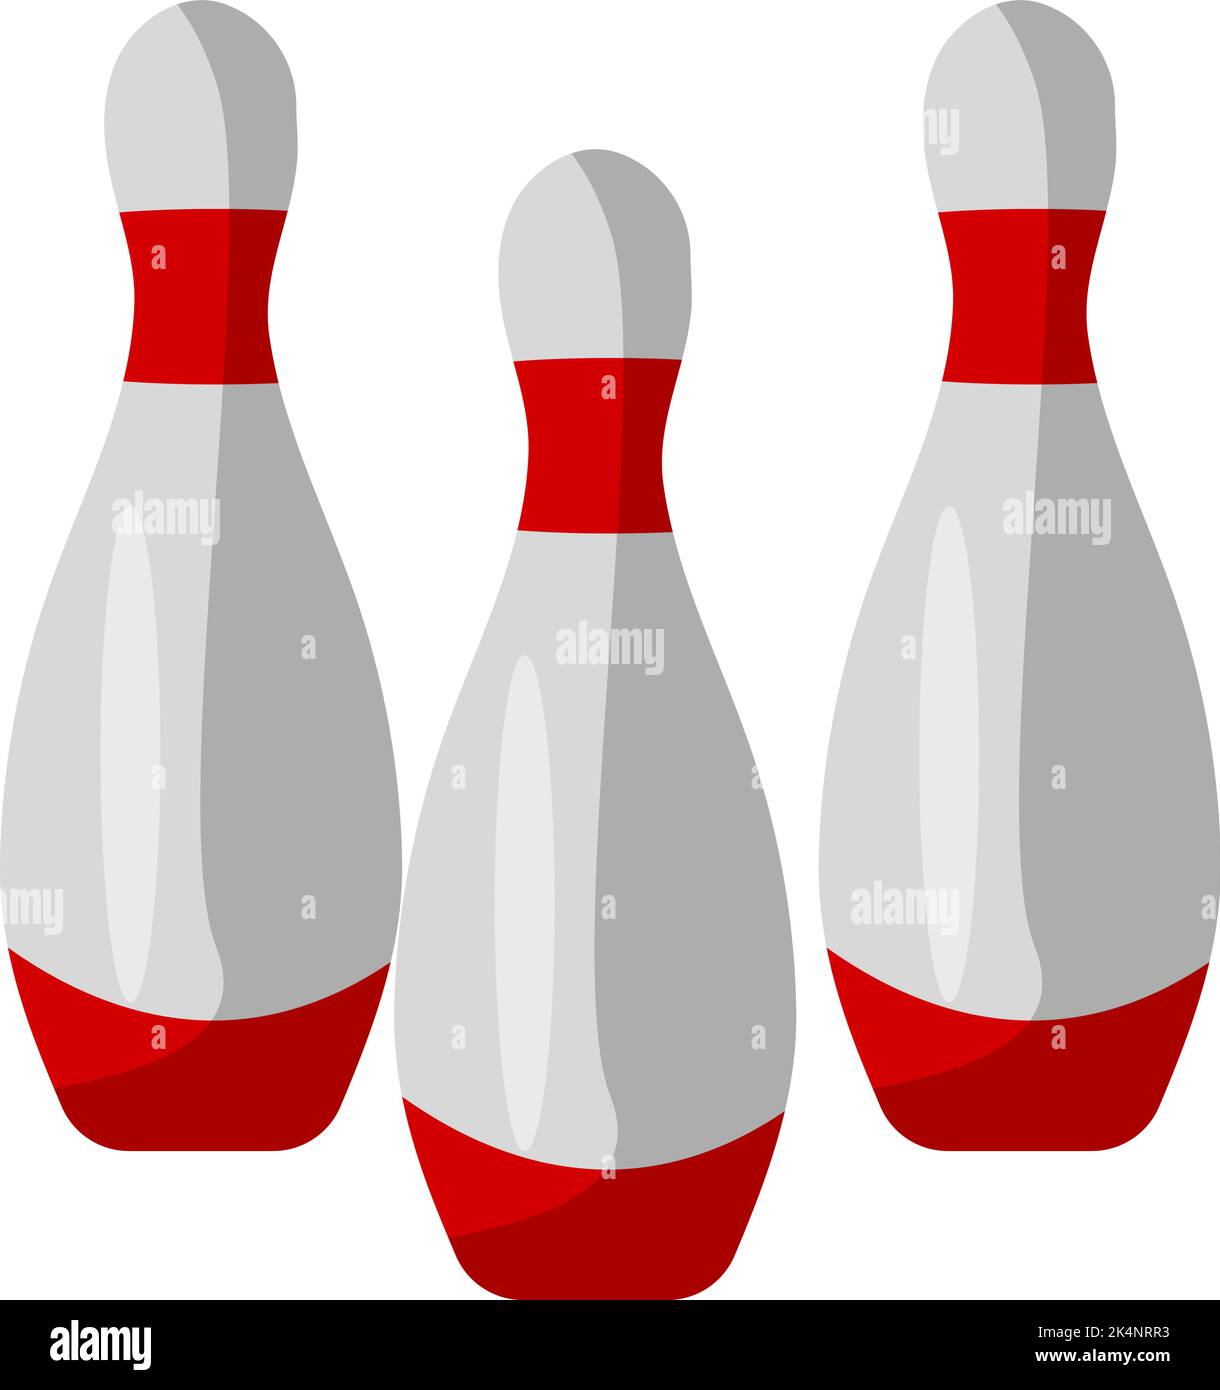 Alte Bowlingpins, Illustration, Vektor auf weißem Hintergrund. Stock Vektor